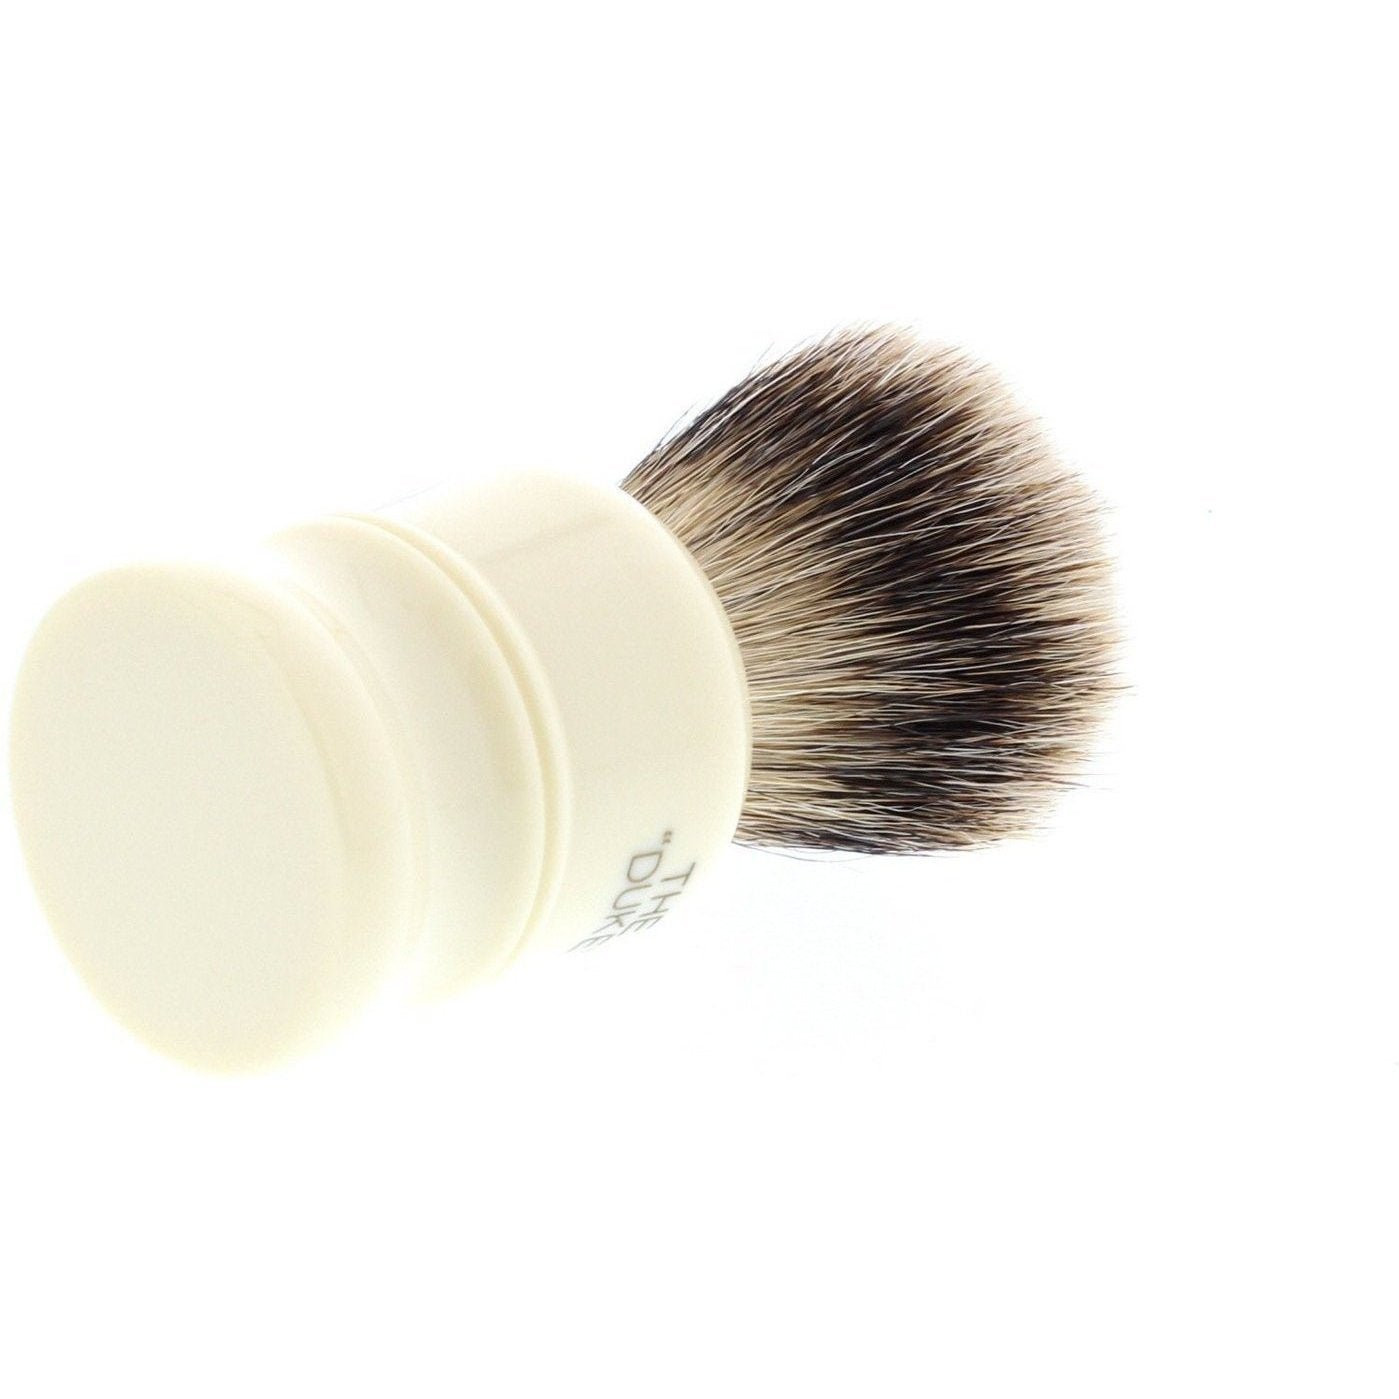 Product image 3 for Simpson Duke 2 Best Badger Shaving Brush D2